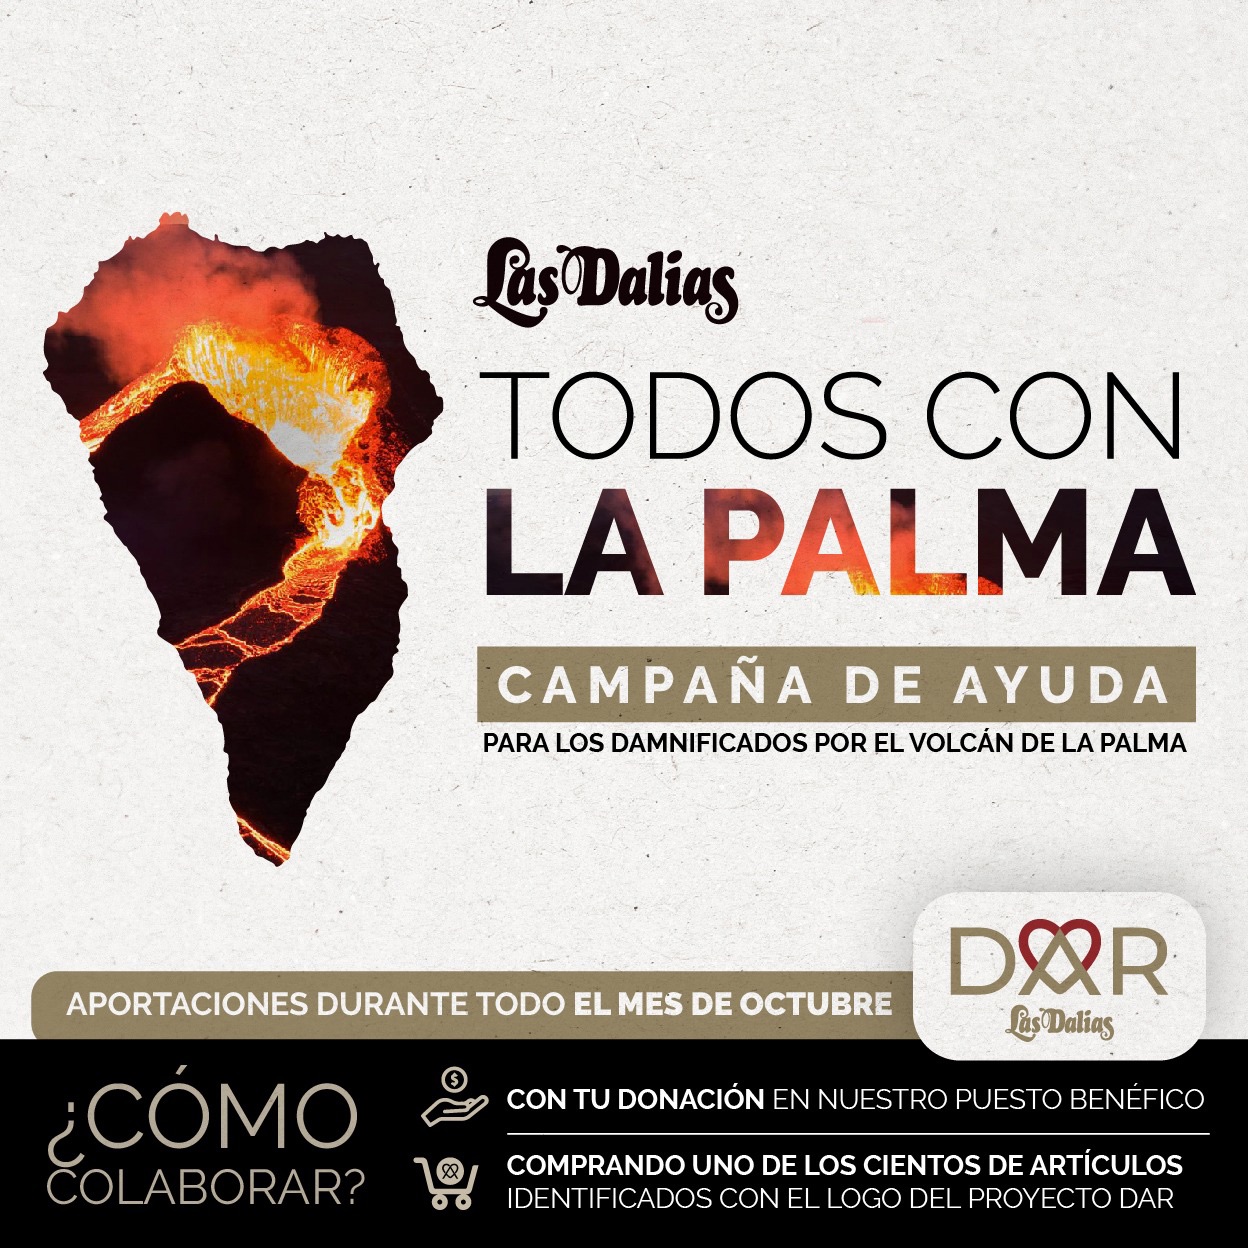 Campaña de ayuda para los damnificados por el volcán de La Palma